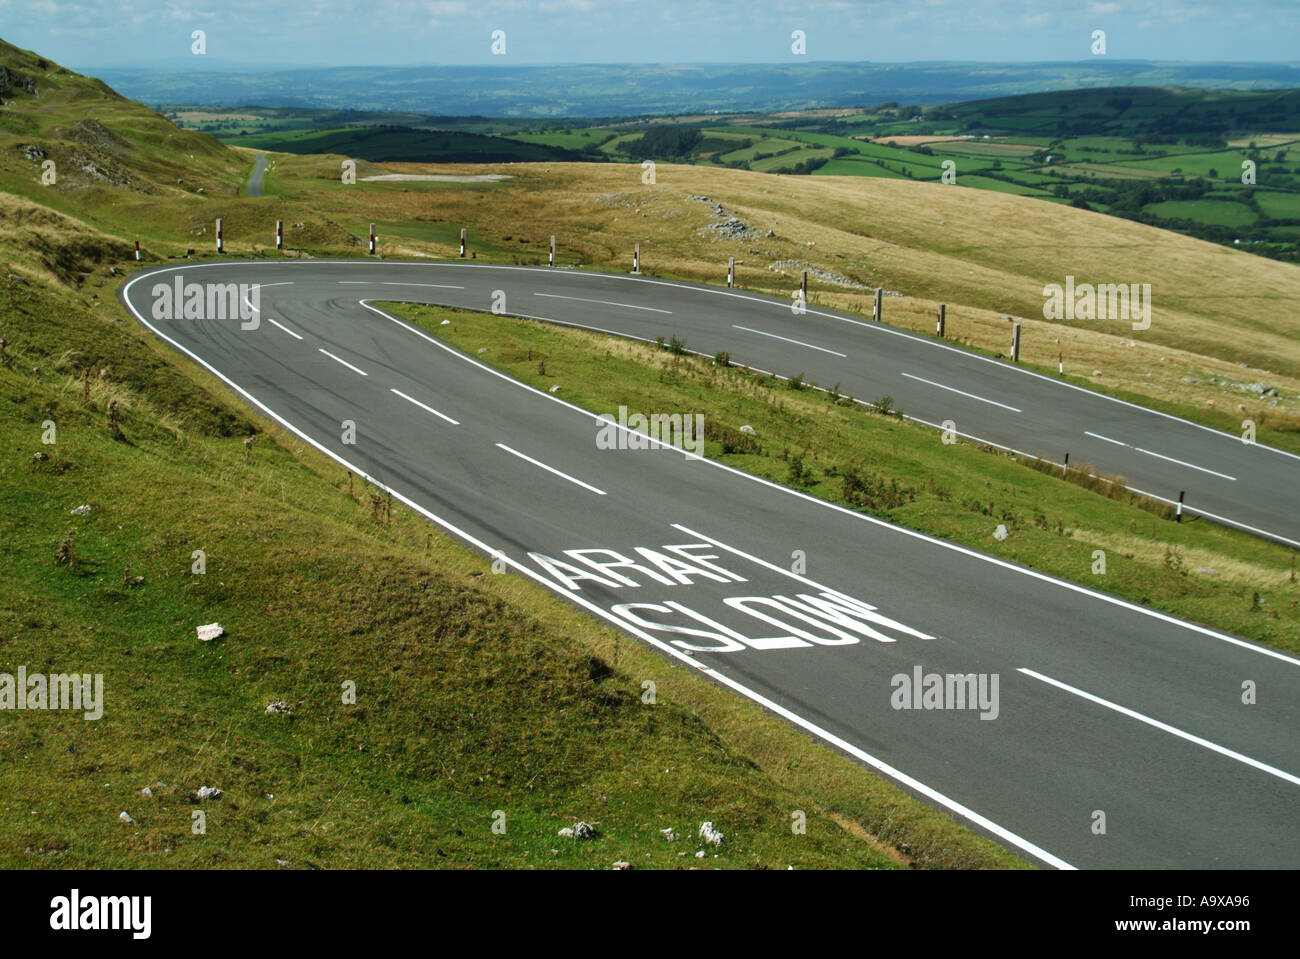 Le Parc National des Brecon Beacons vide non clôturées moorland road épingle avertissement multilingue bilingue signe de route marquée sur la route vallonnée South Wales UK Banque D'Images